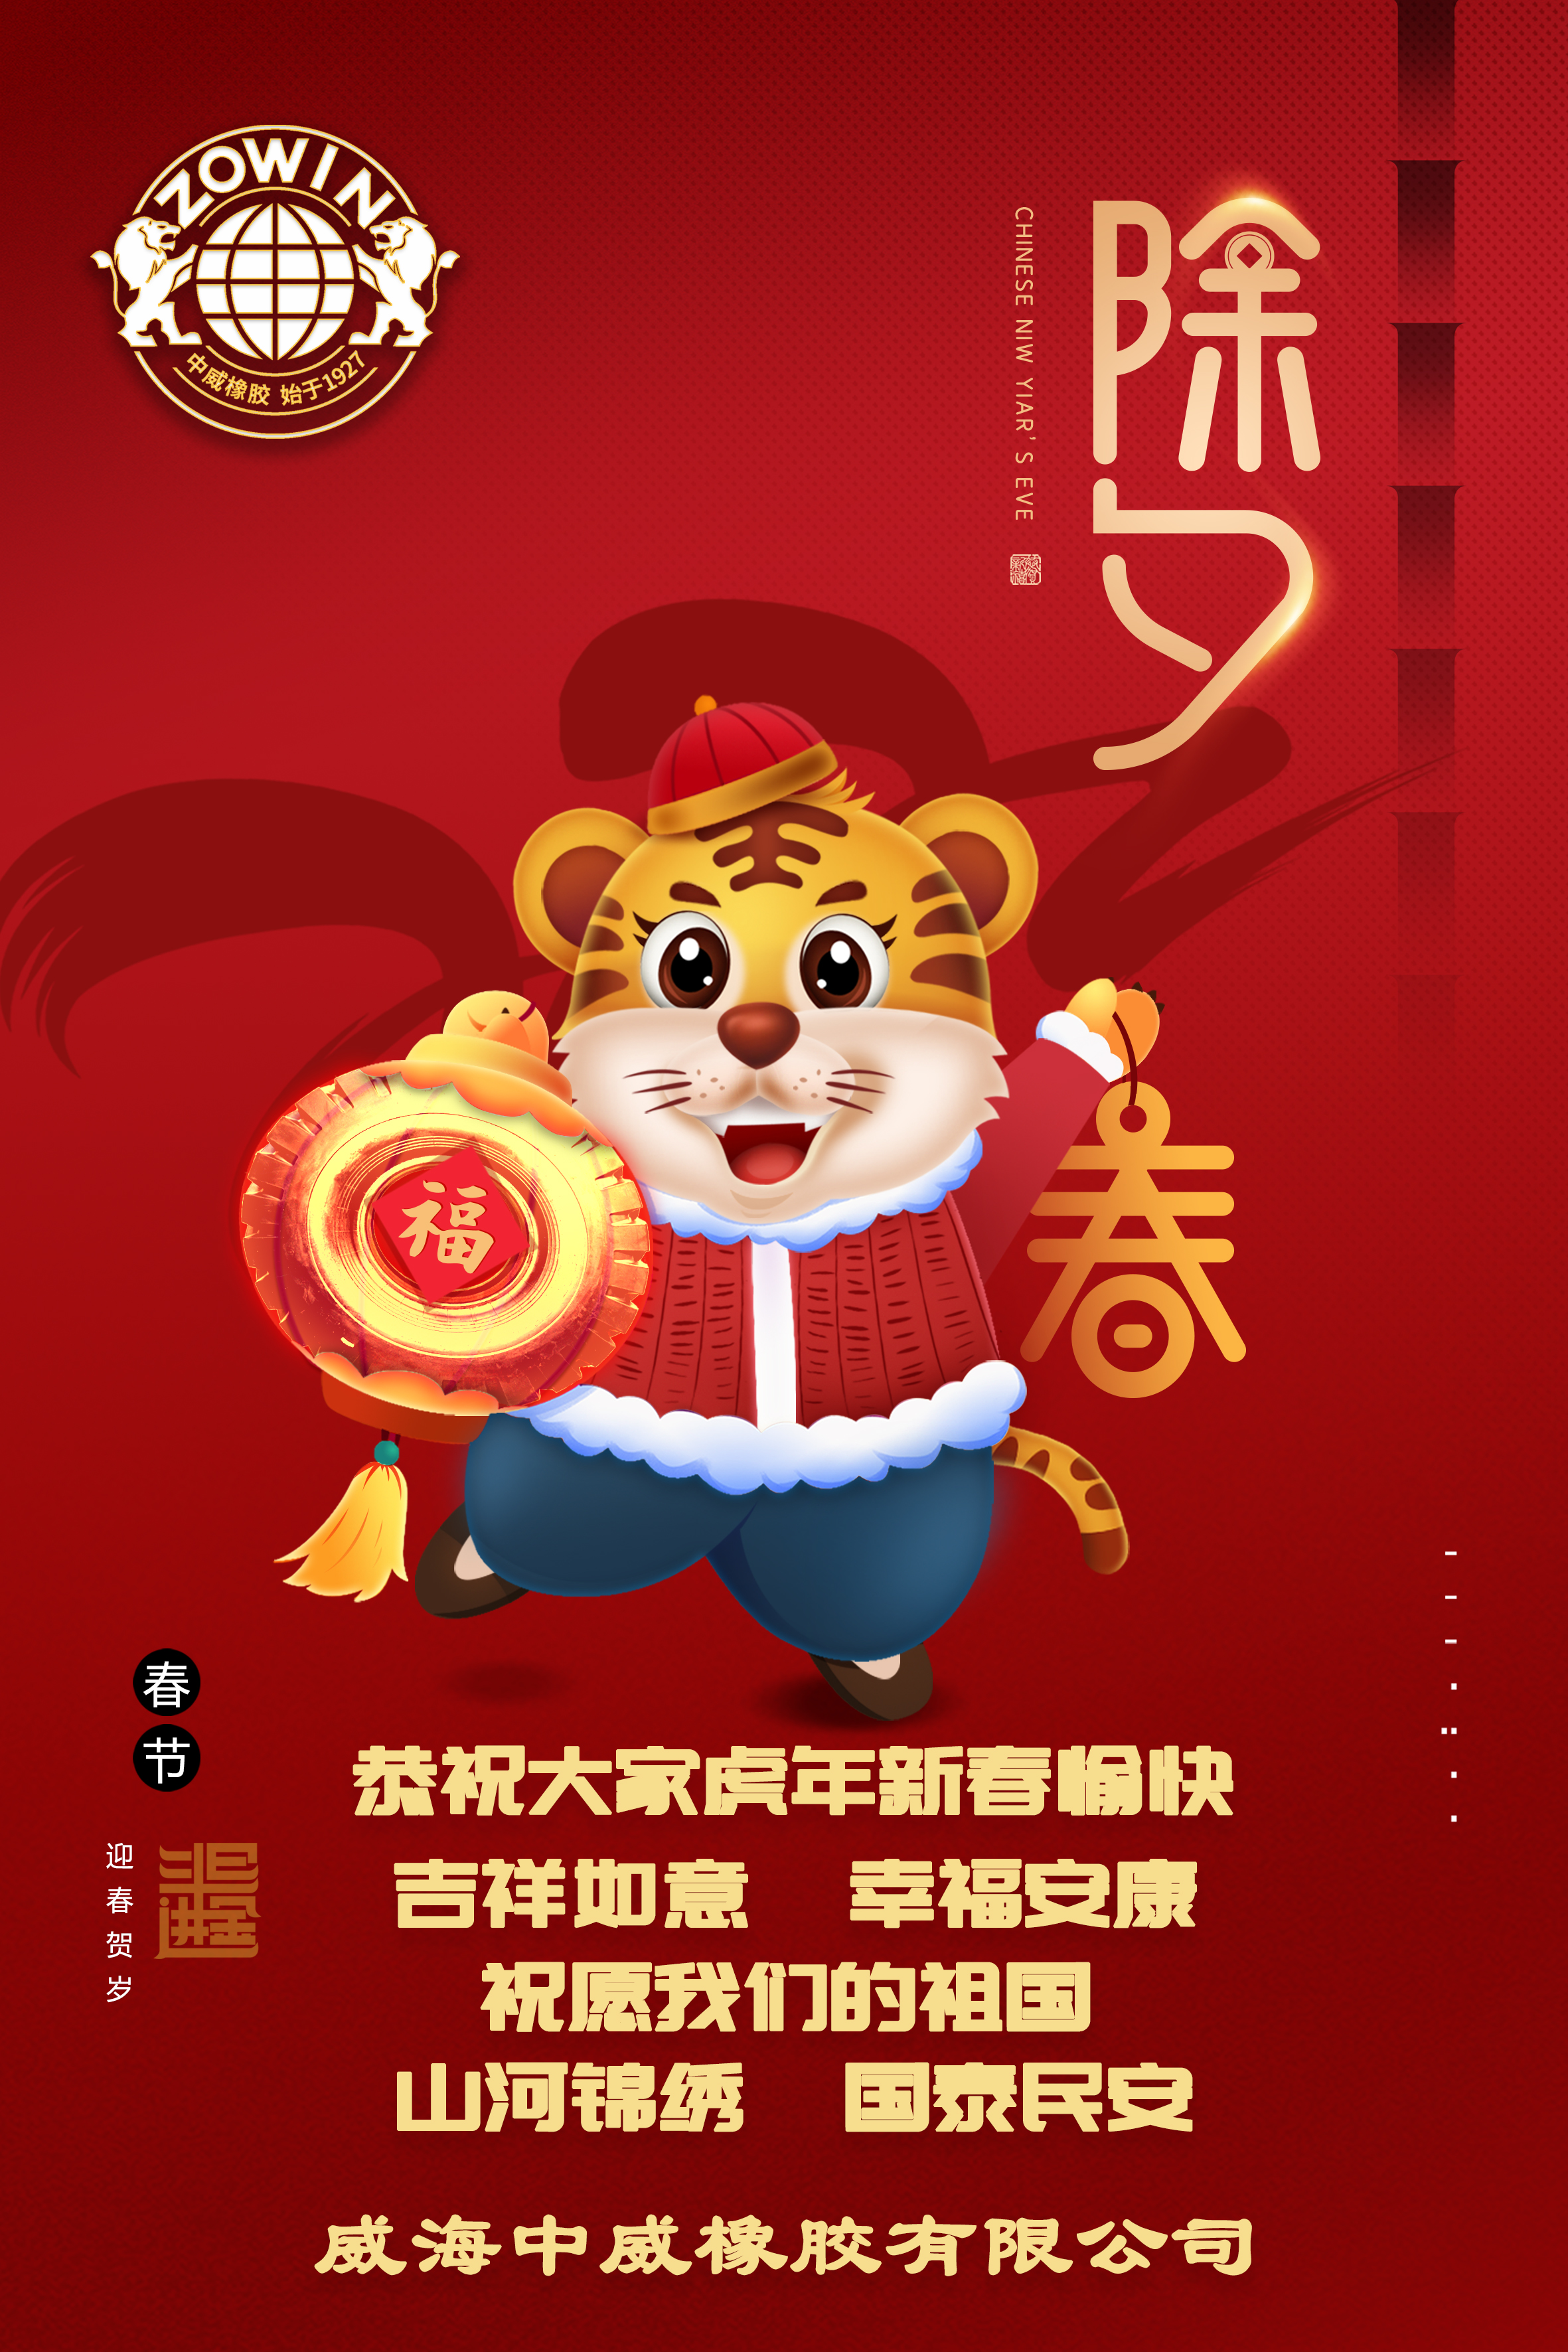 乐鱼电子官网(中国)官方网站恭祝大家虎年新春快乐